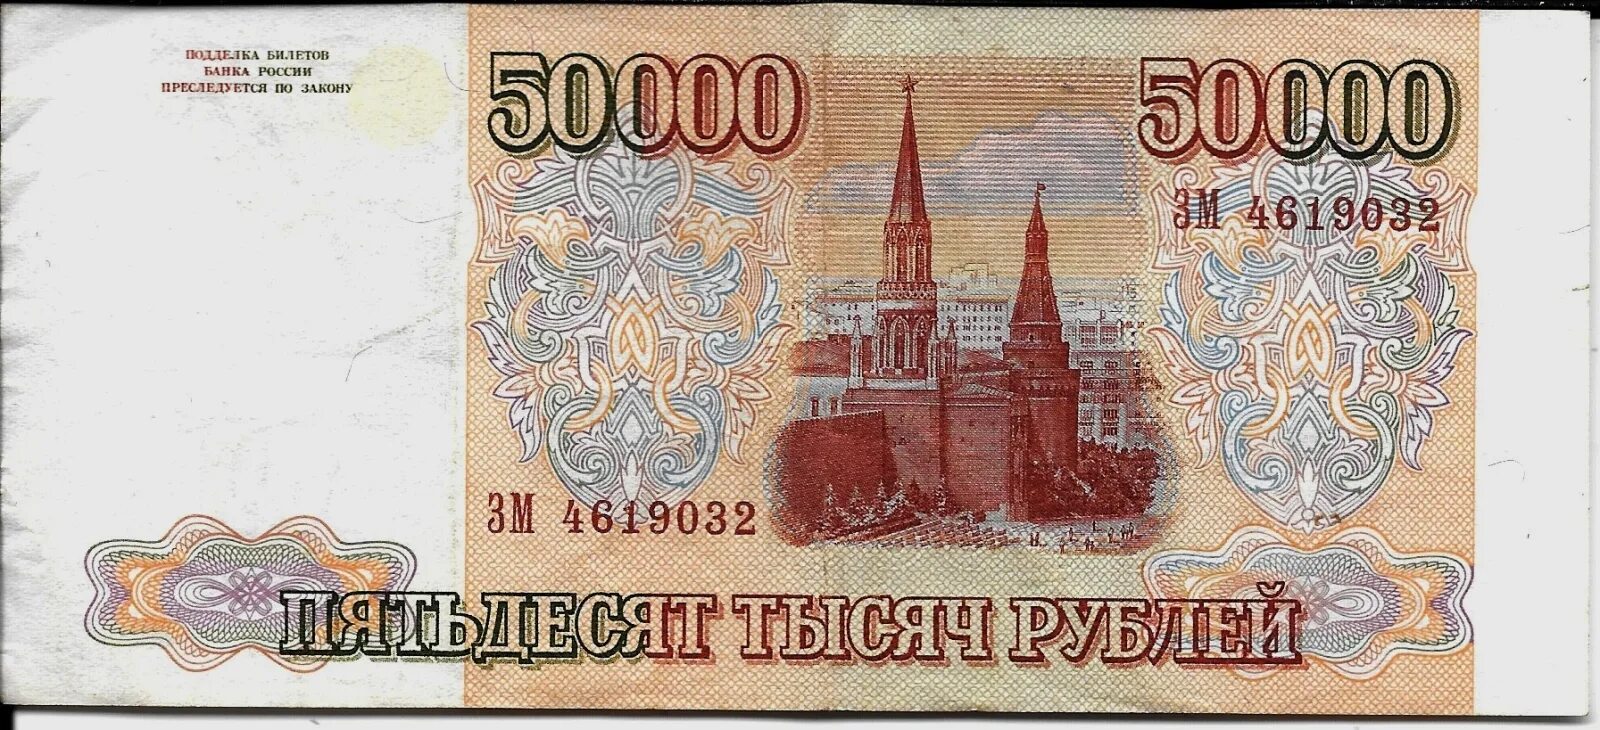 300 90 рублей. 50000 Рублей 1993. Купюра 50000 рублей 1993. Банкнота 50000 рублей 1993. 100 Рублей 90 годов.